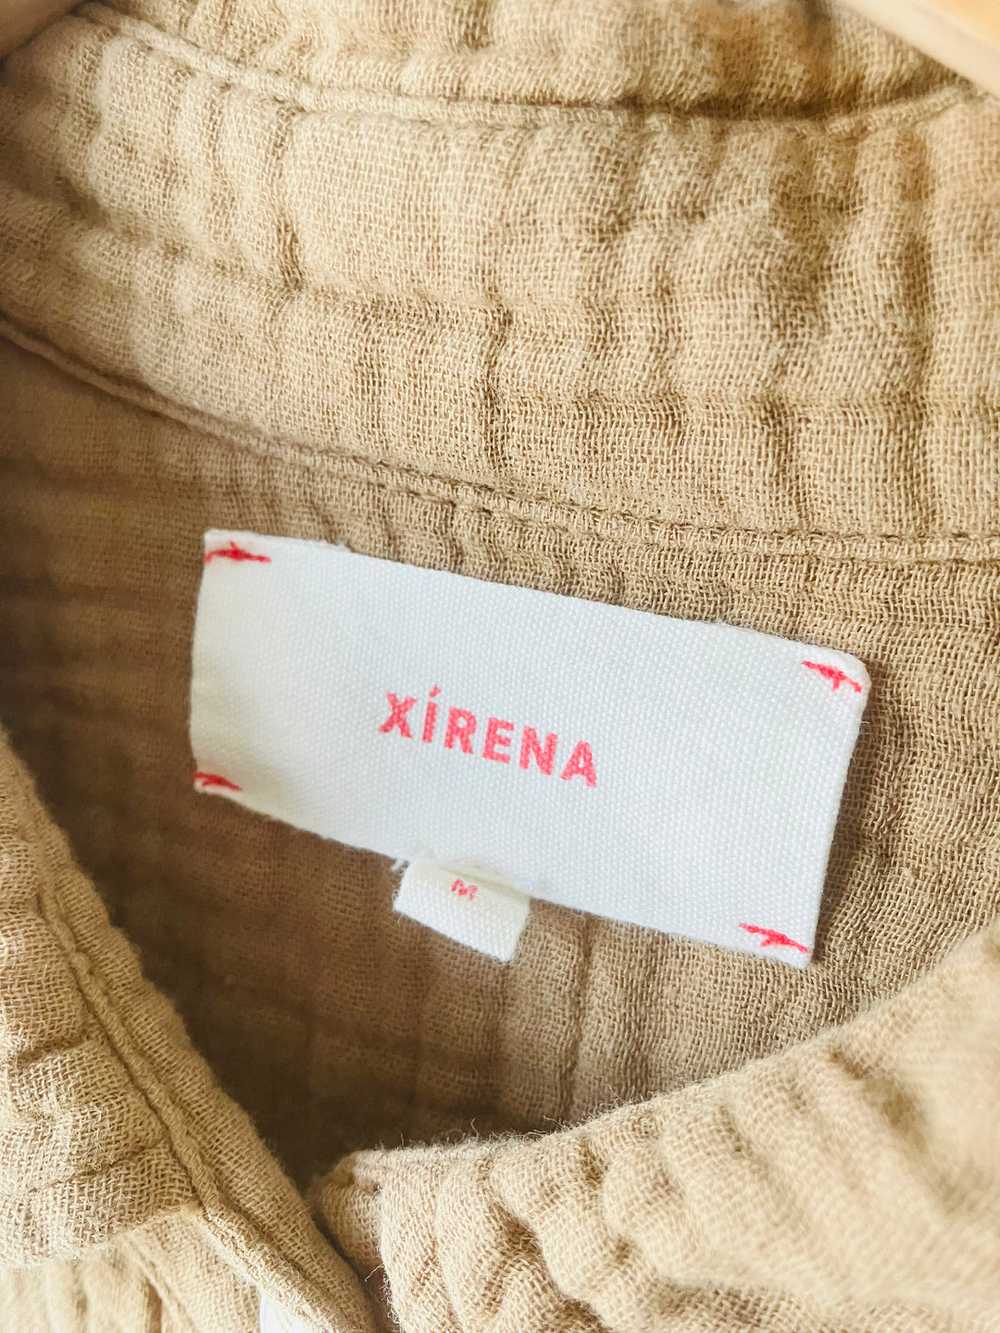 Xirena Tan Long Sleeve Button Down Shirt - image 3